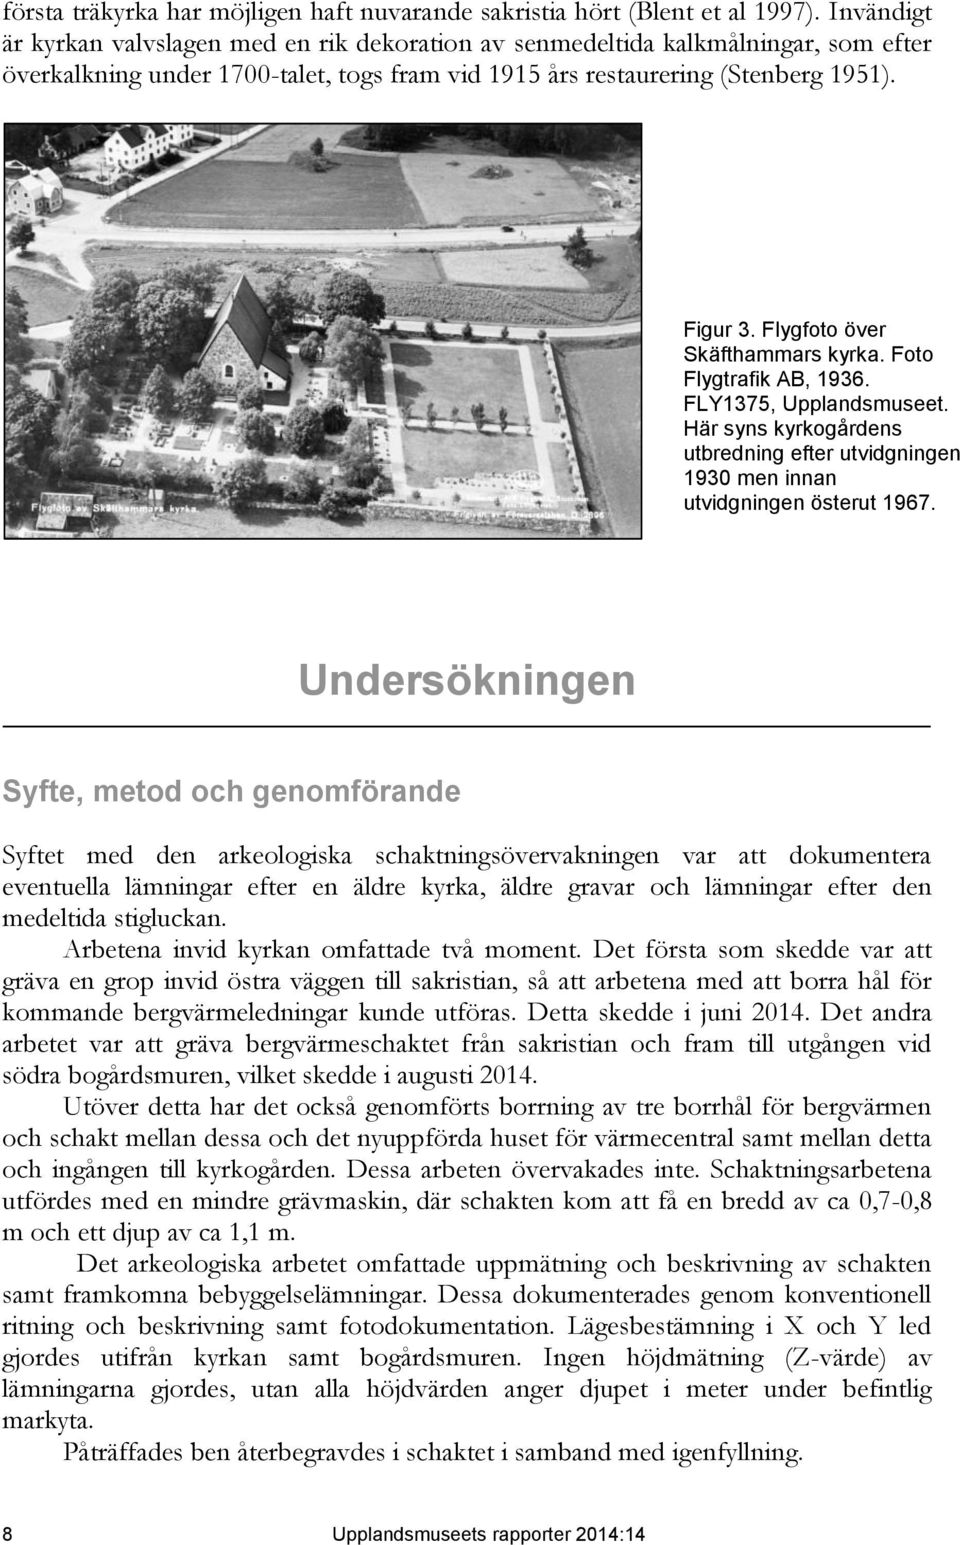 Flygfoto över Skäfthammars kyrka. Foto Flygtrafik AB, 1936. FLY1375, Upplandsmuseet. Här syns kyrkogårdens utbredning efter utvidgningen 1930 men innan utvidgningen österut 1967.